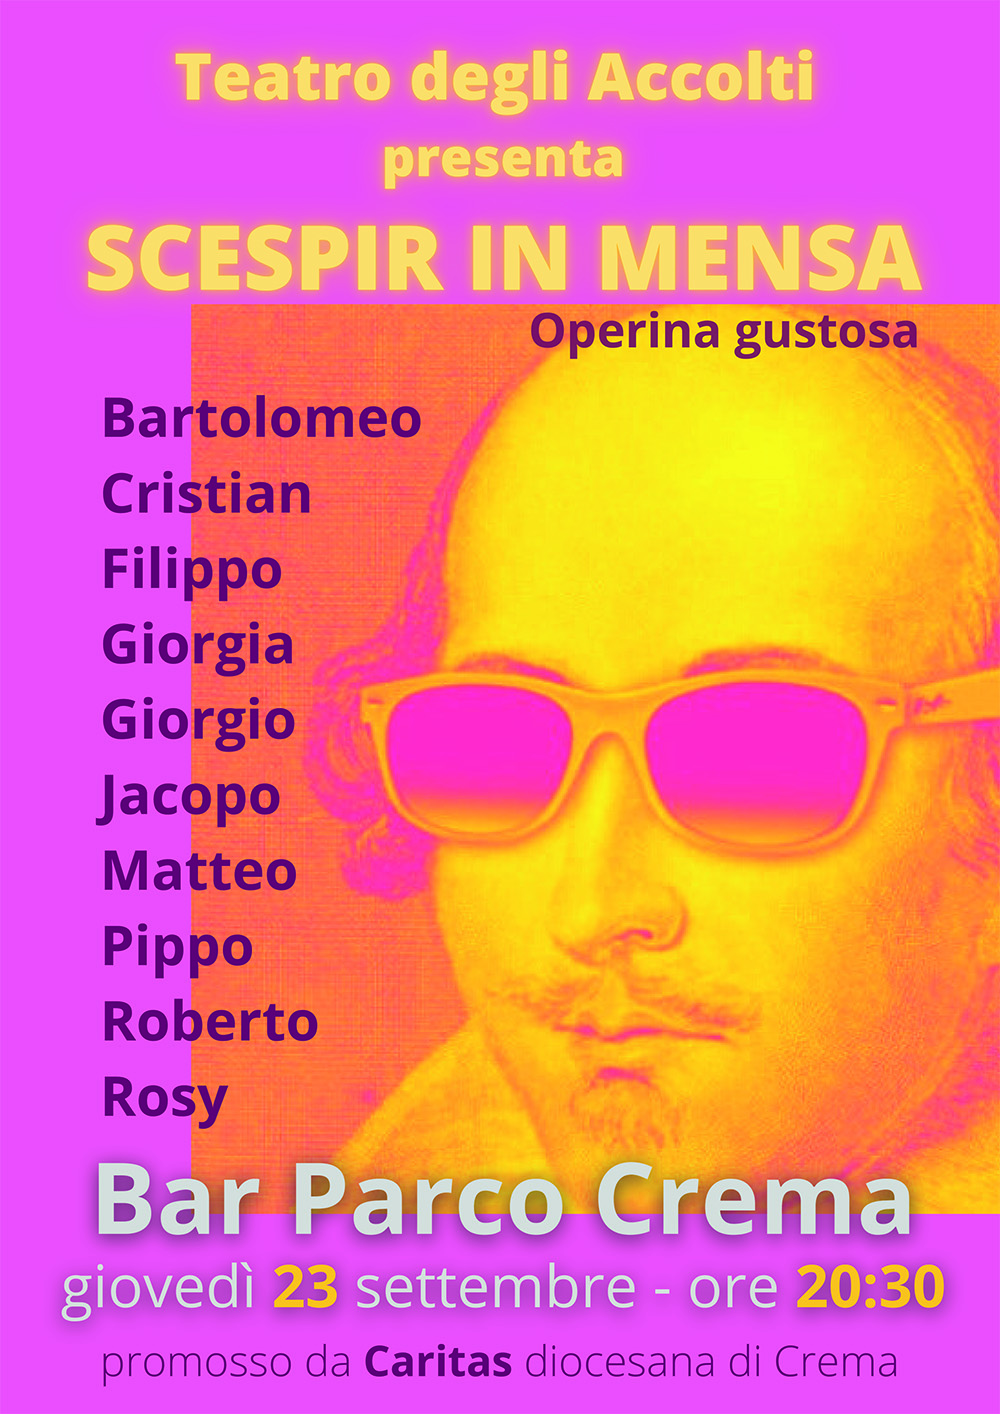 Il Teatro degli Accolti presenta “Scespir in mensa”  Operina gustosa, giovedì 23 settembre alle ore 20.30,  presso il Bar Parco, al parco Bonaldi in viale Europa